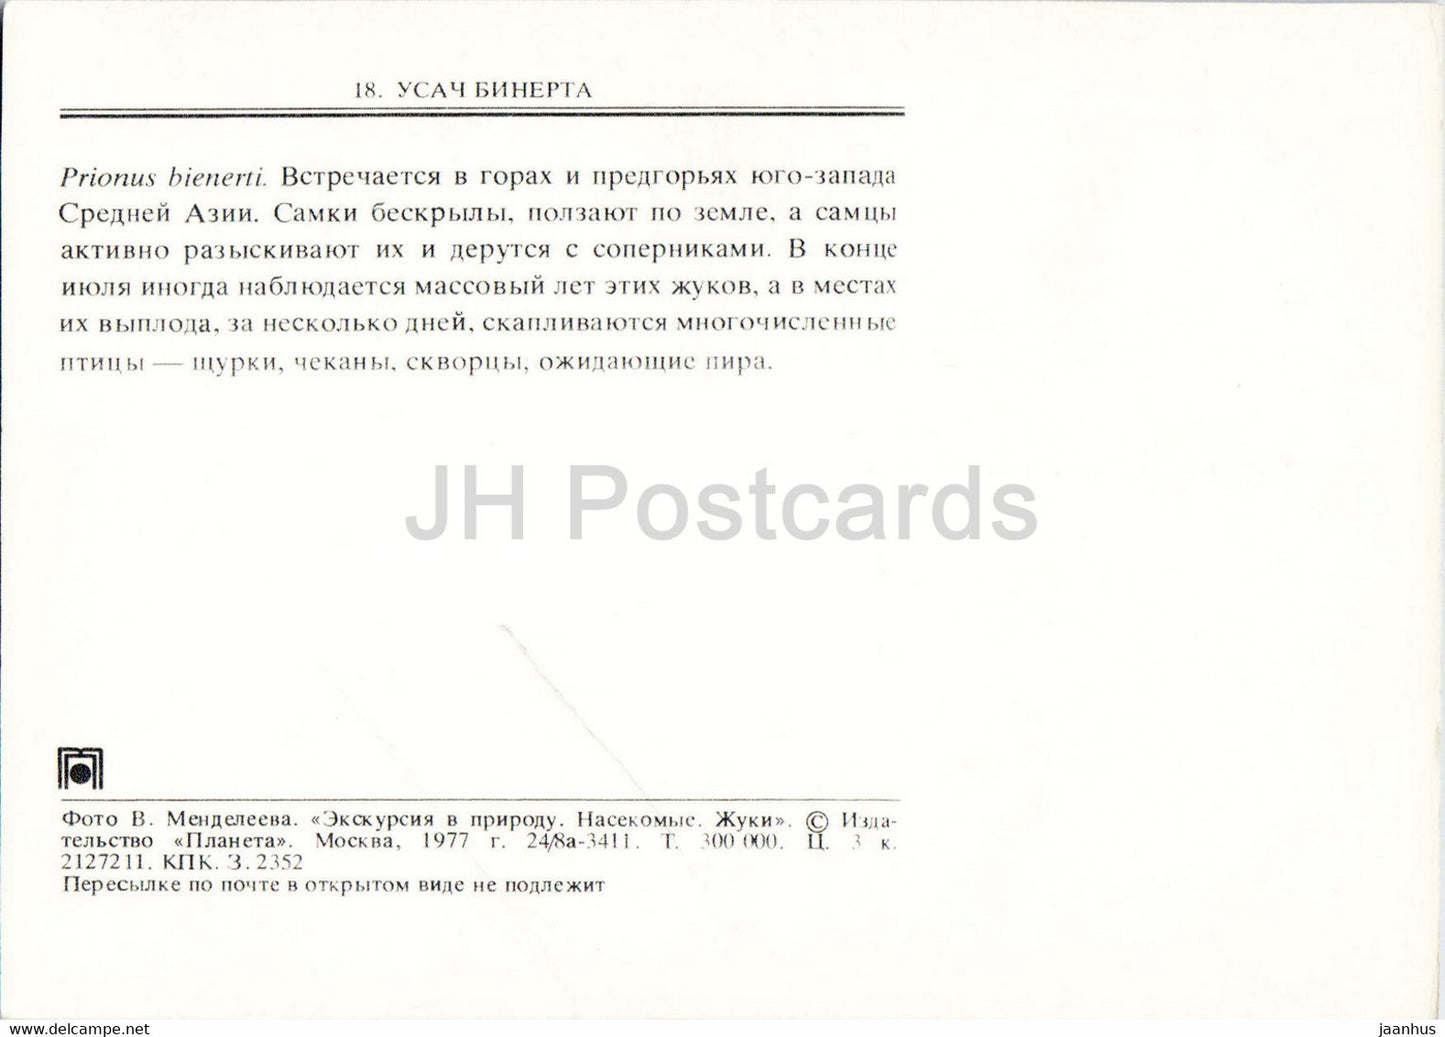 Prionus bienerti - insectes - 1977 - Russie URSS - inutilisé